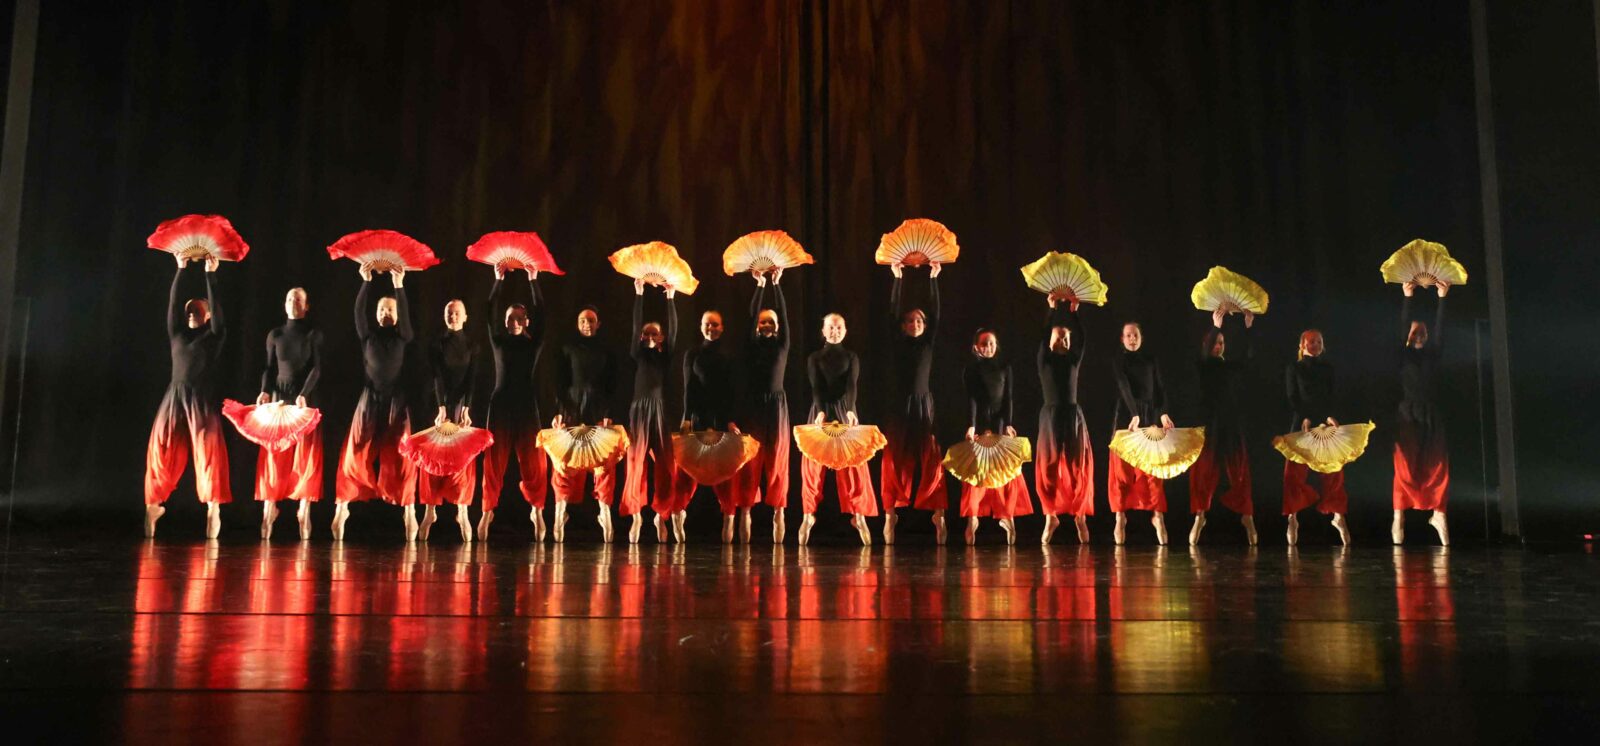 tanssijoita rivissä lavalla mustaa taustaa vasten, oranssit viuhkat kädessä. heillä on mustat paidat ja oranssit housut.